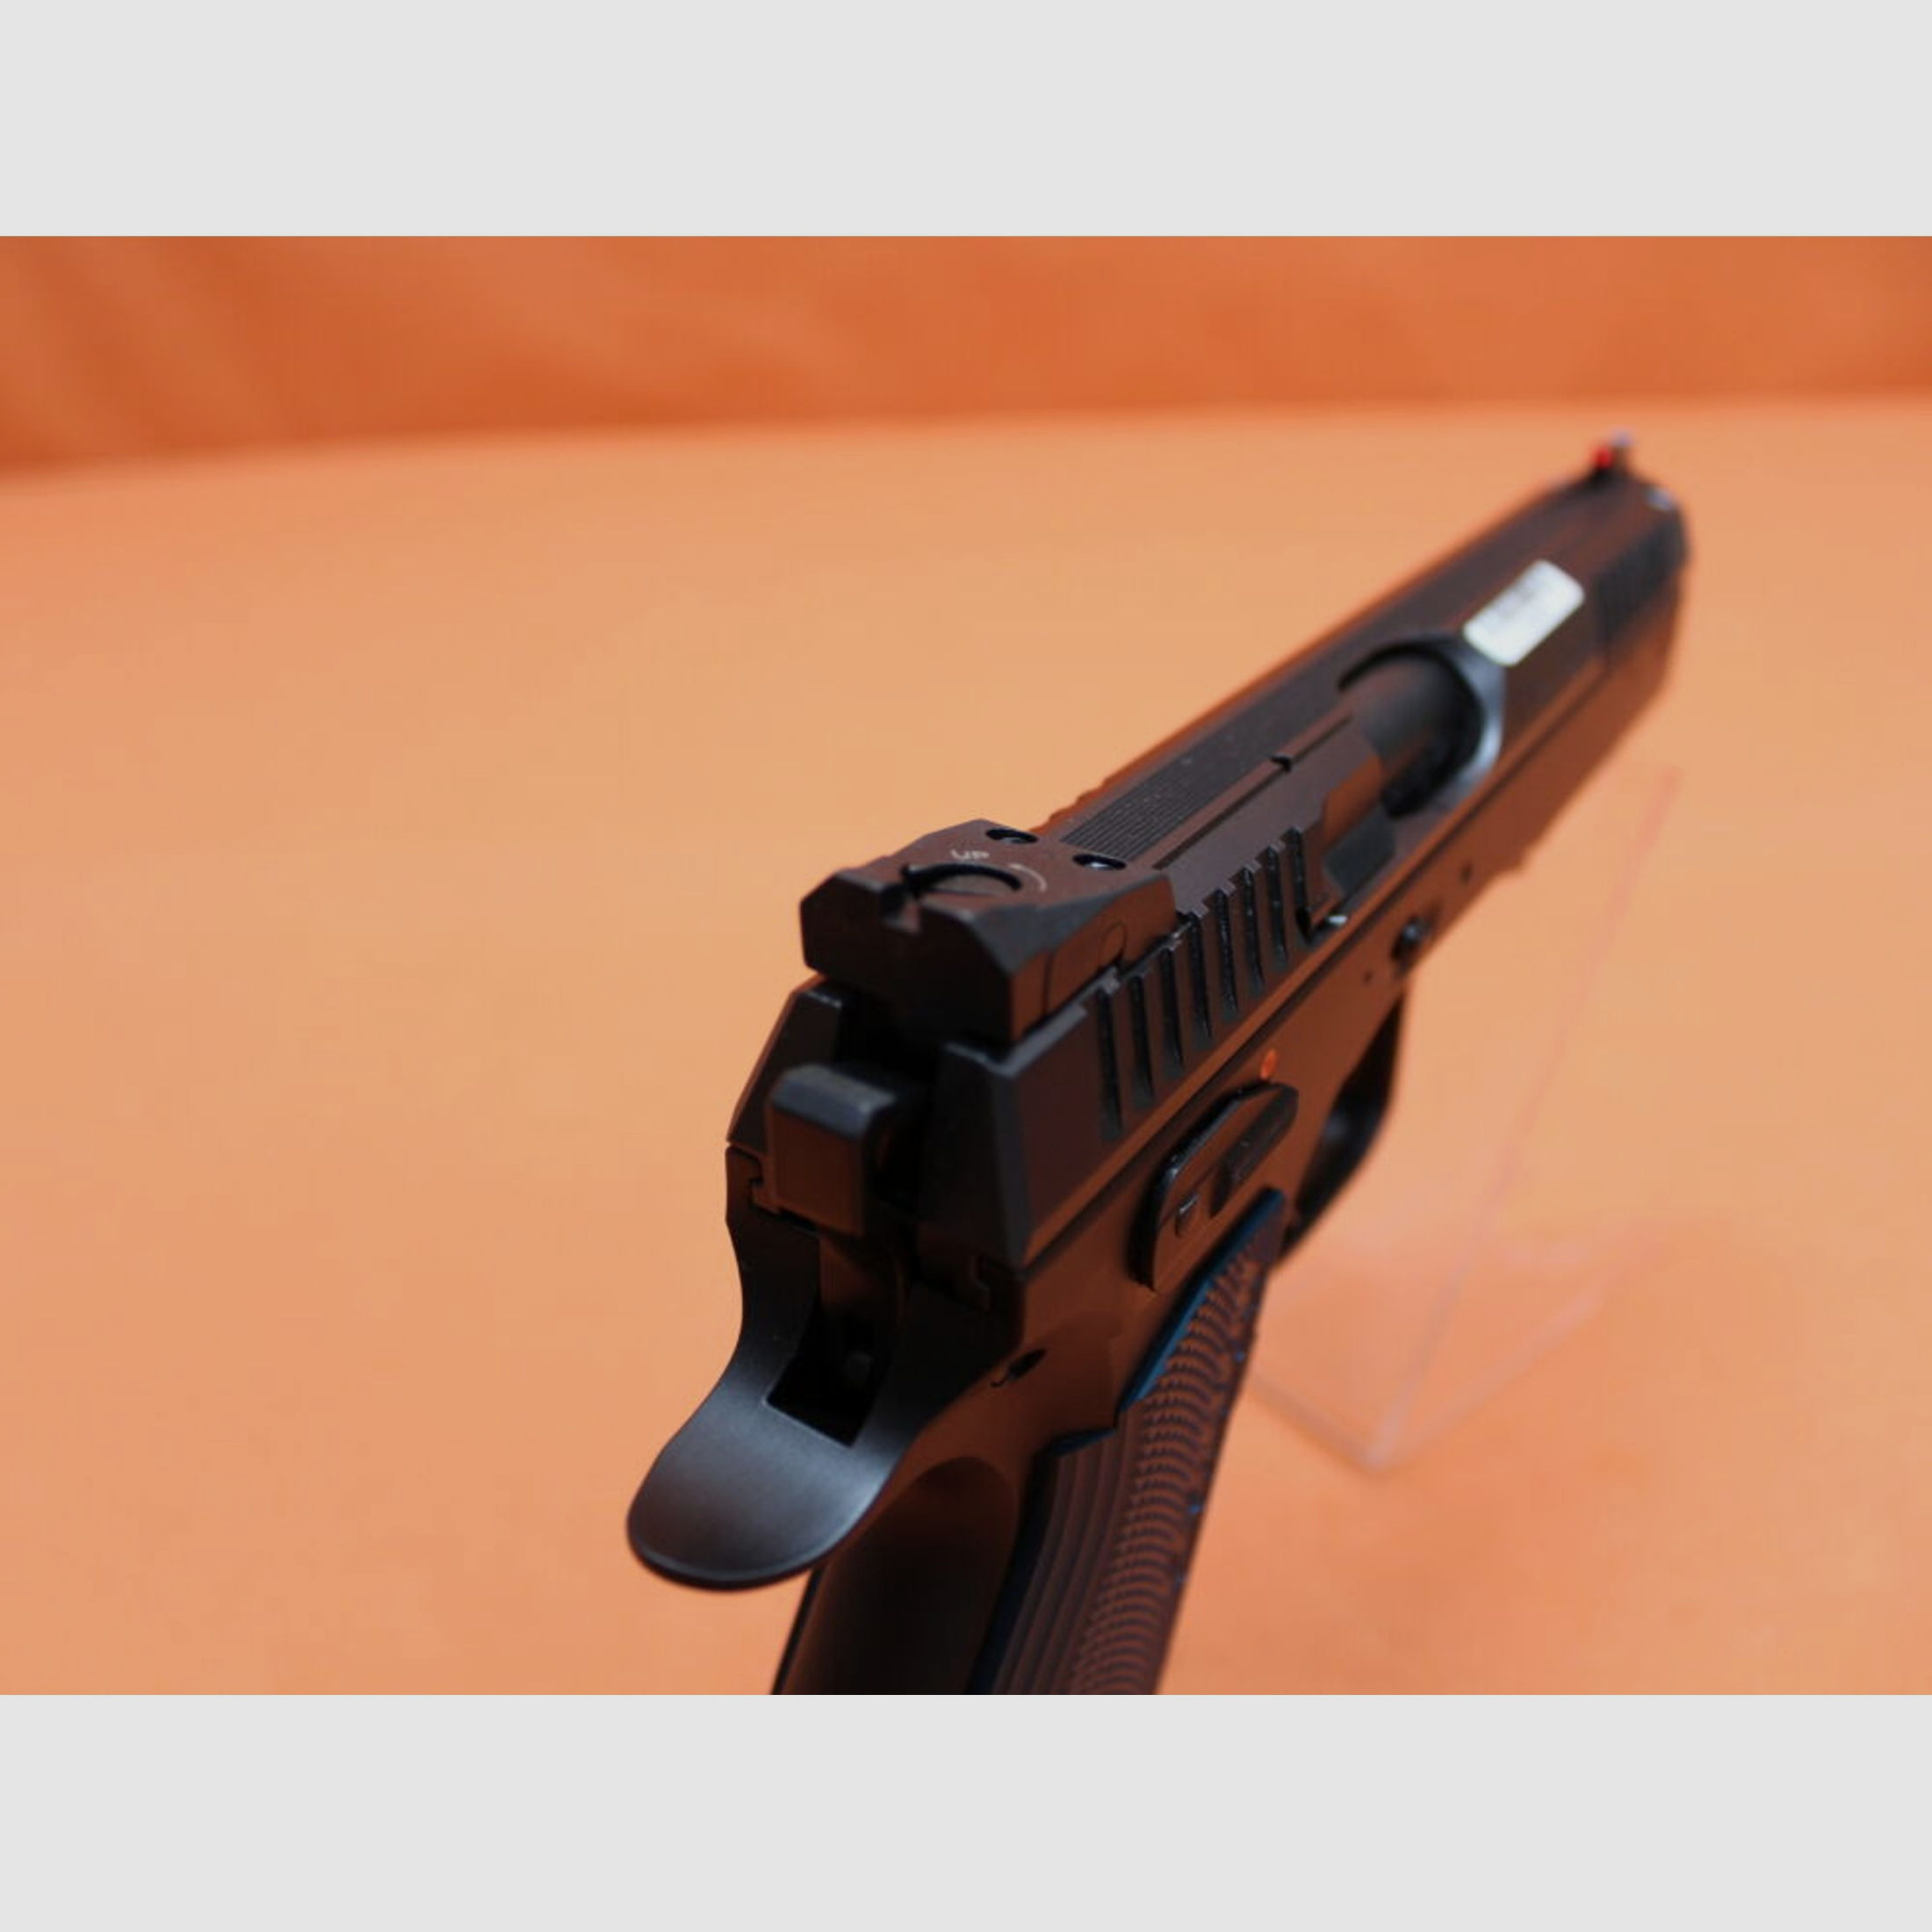 CZUB	 Ha.Pistole 9mmLuger CZUB SHADOW2 Black Poly SA-Abzug/Fiber-Leuchtkorn/3 Magazine (9mmPara/9x19)CZ75